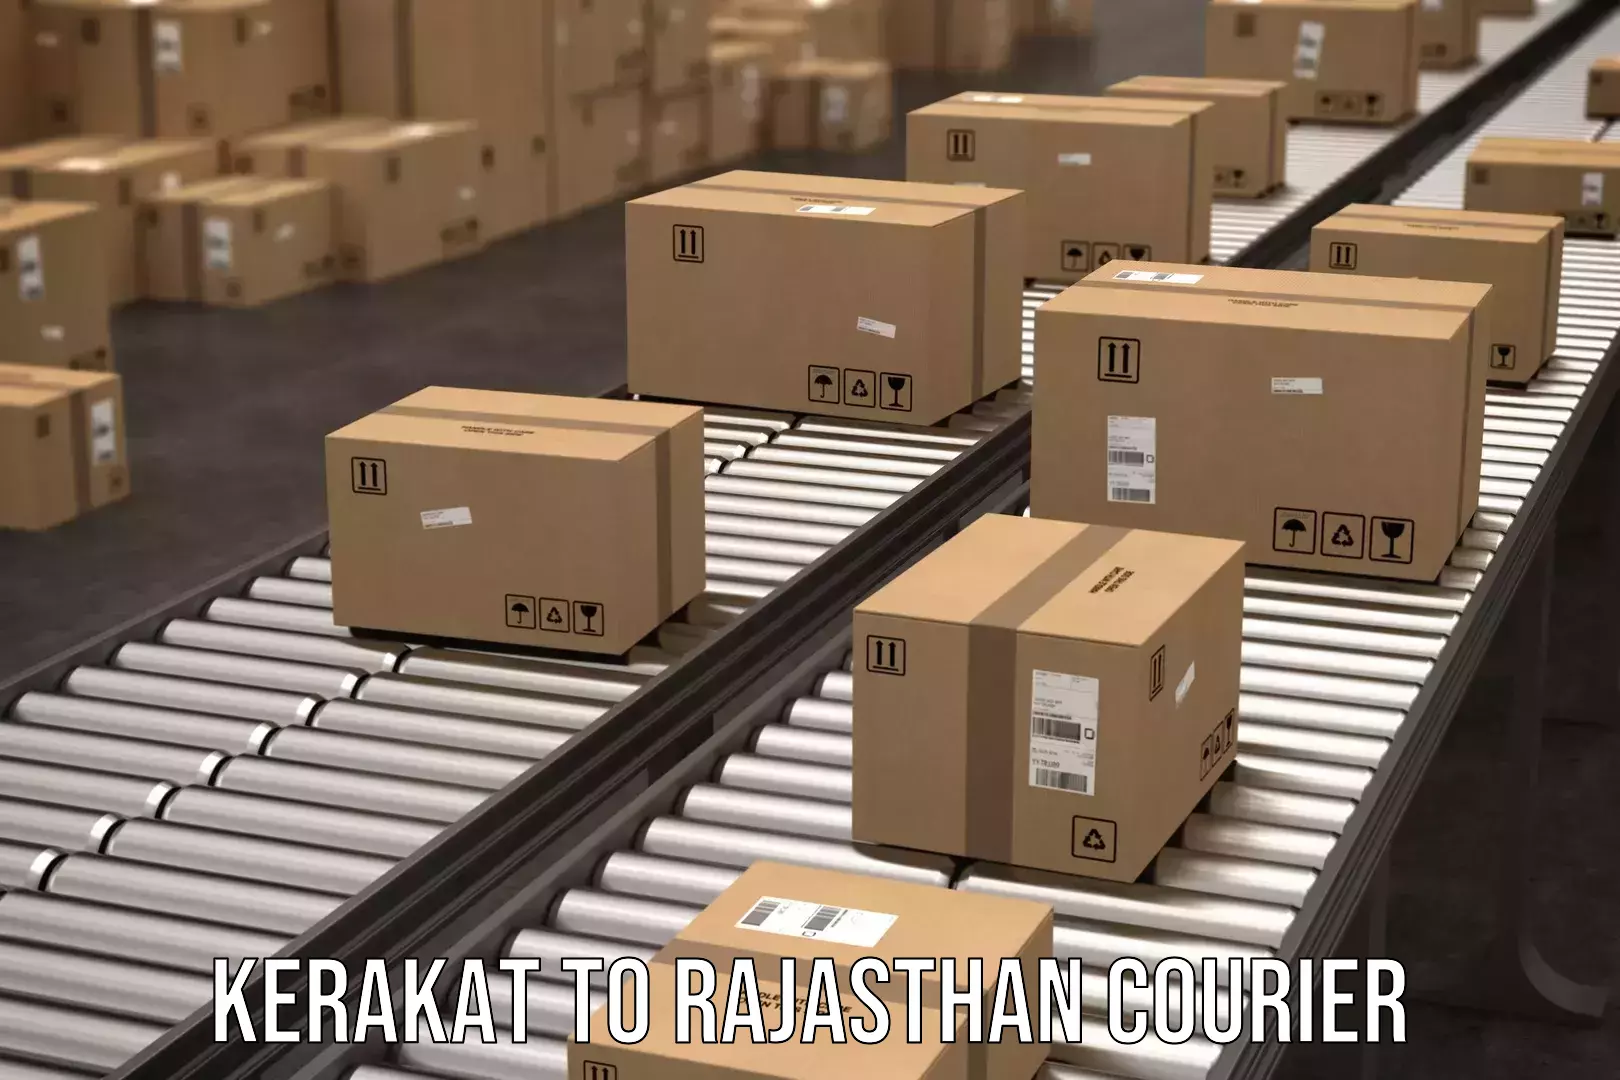 Emergency parcel delivery in Kerakat to Kota